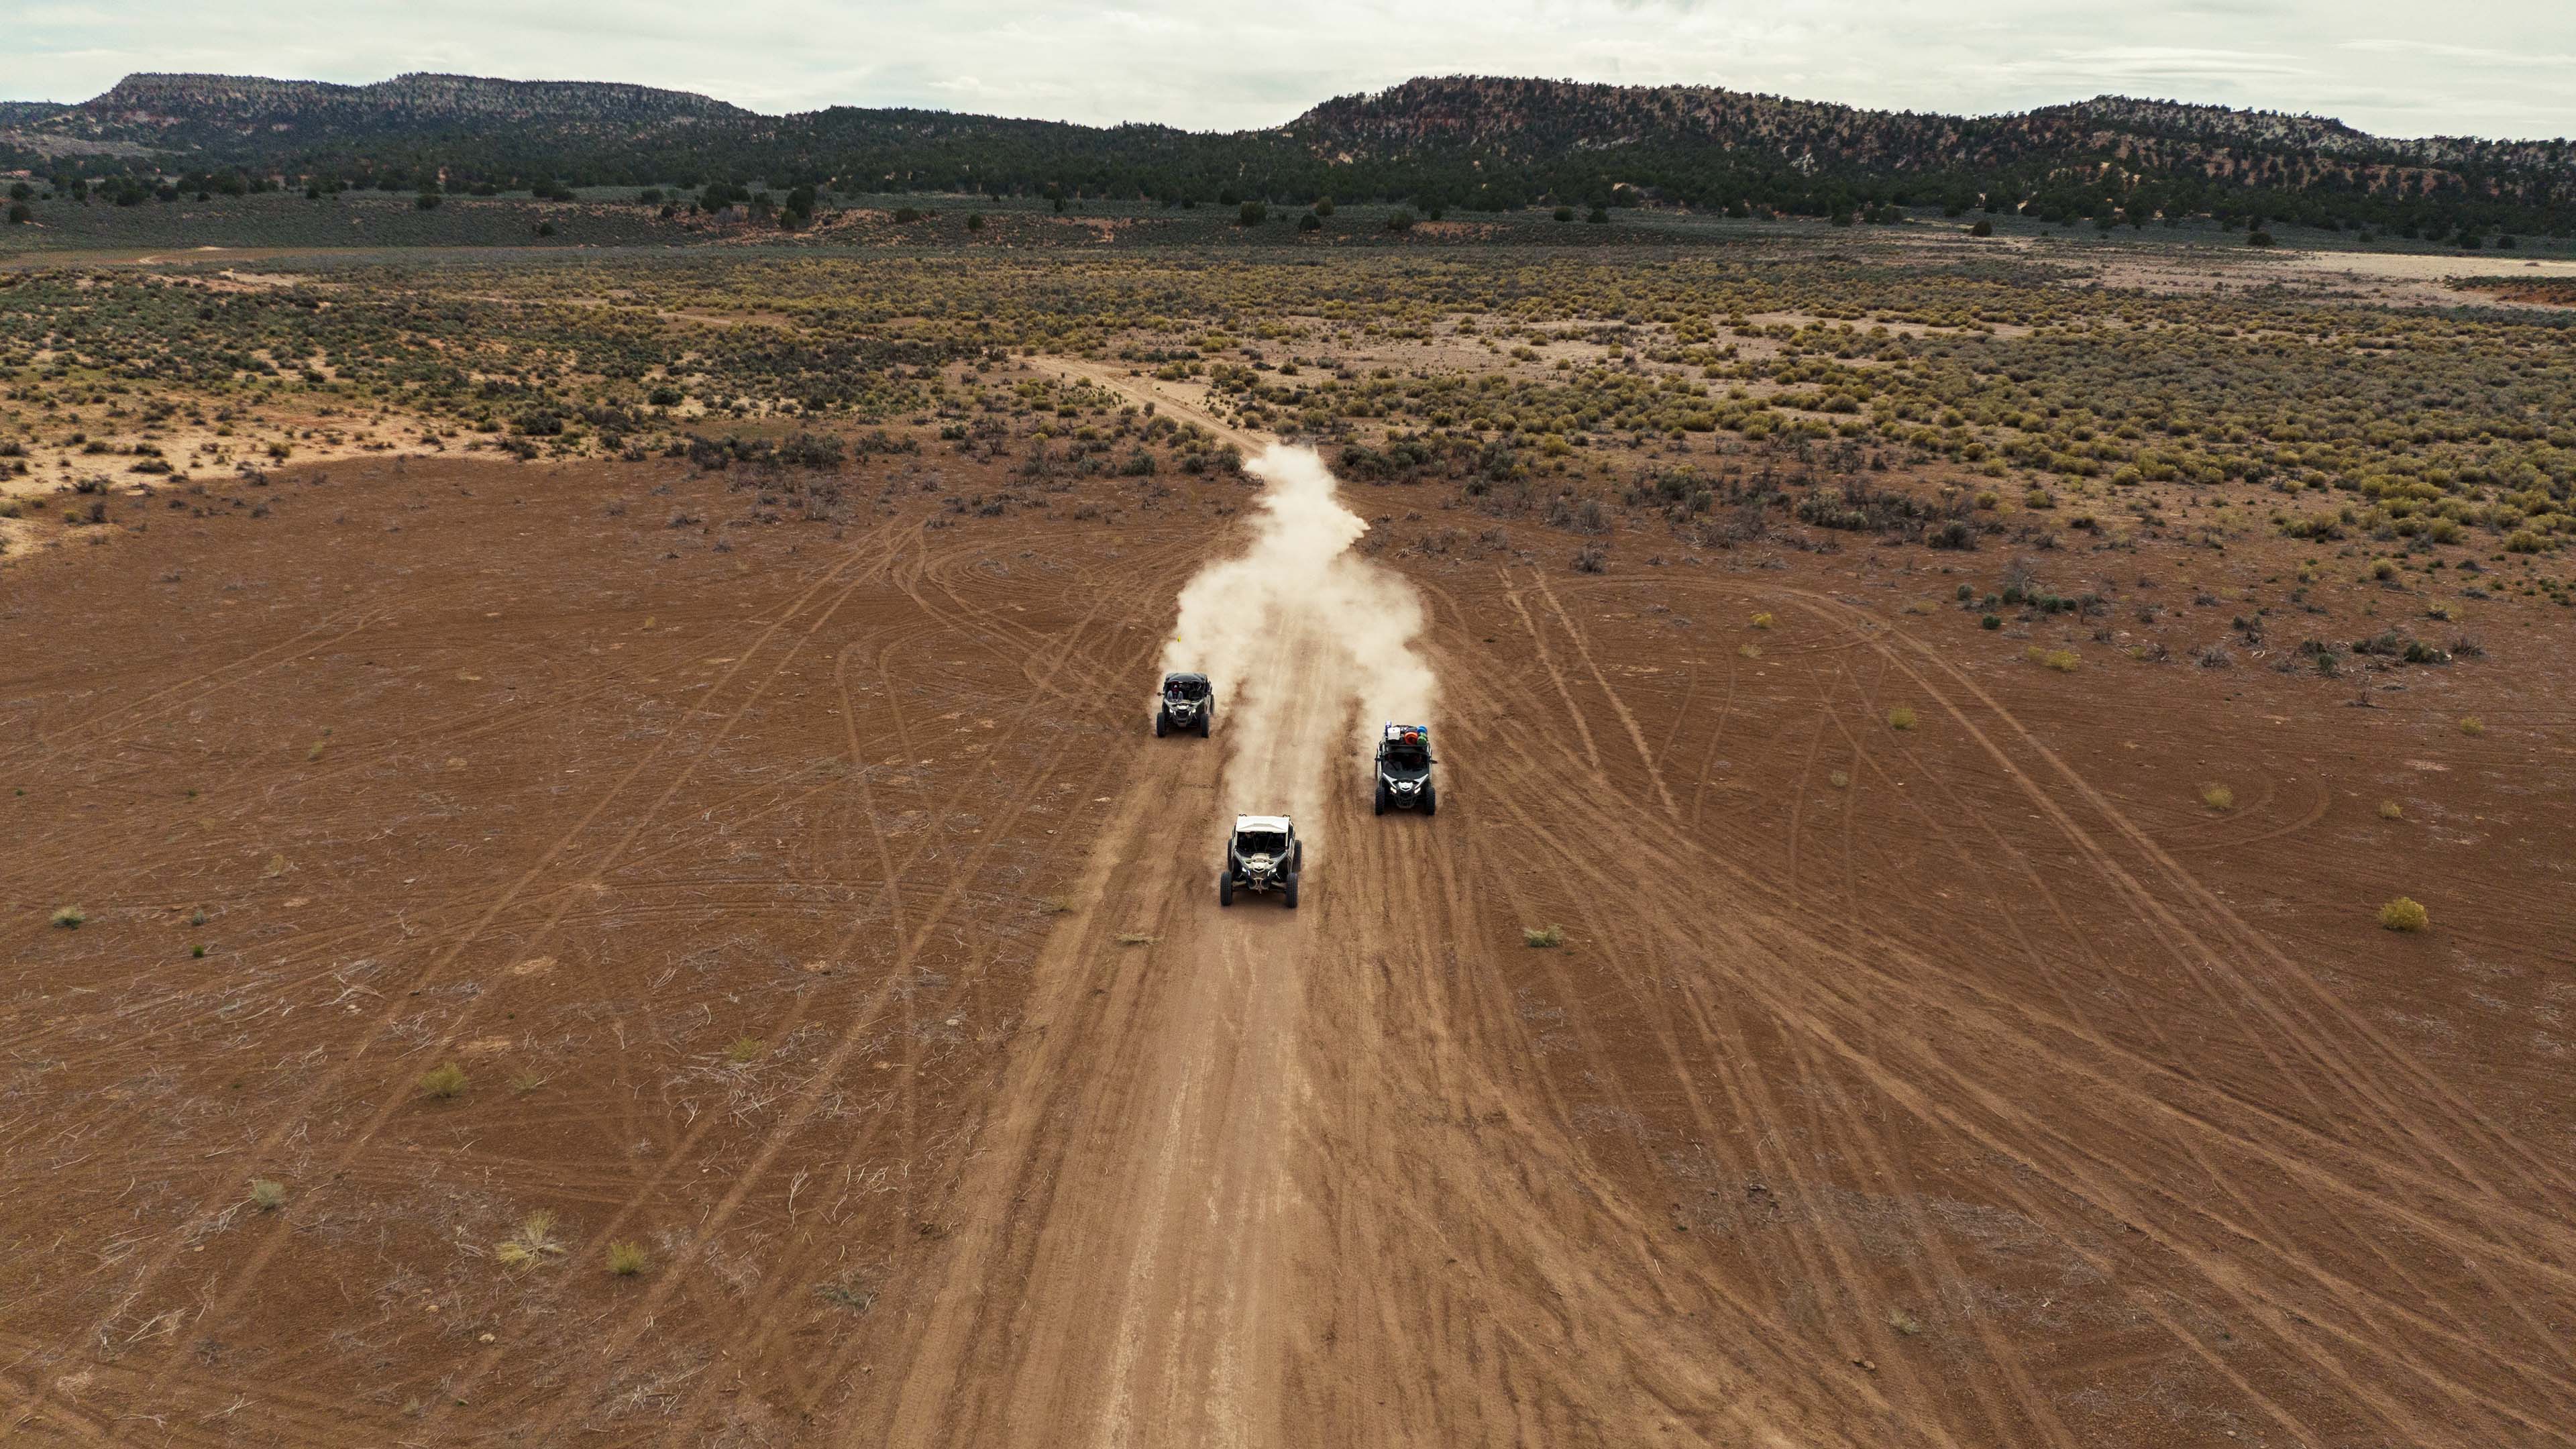 Trois véhicules Can-Am Hors-Route coursant sur un chemin de terre